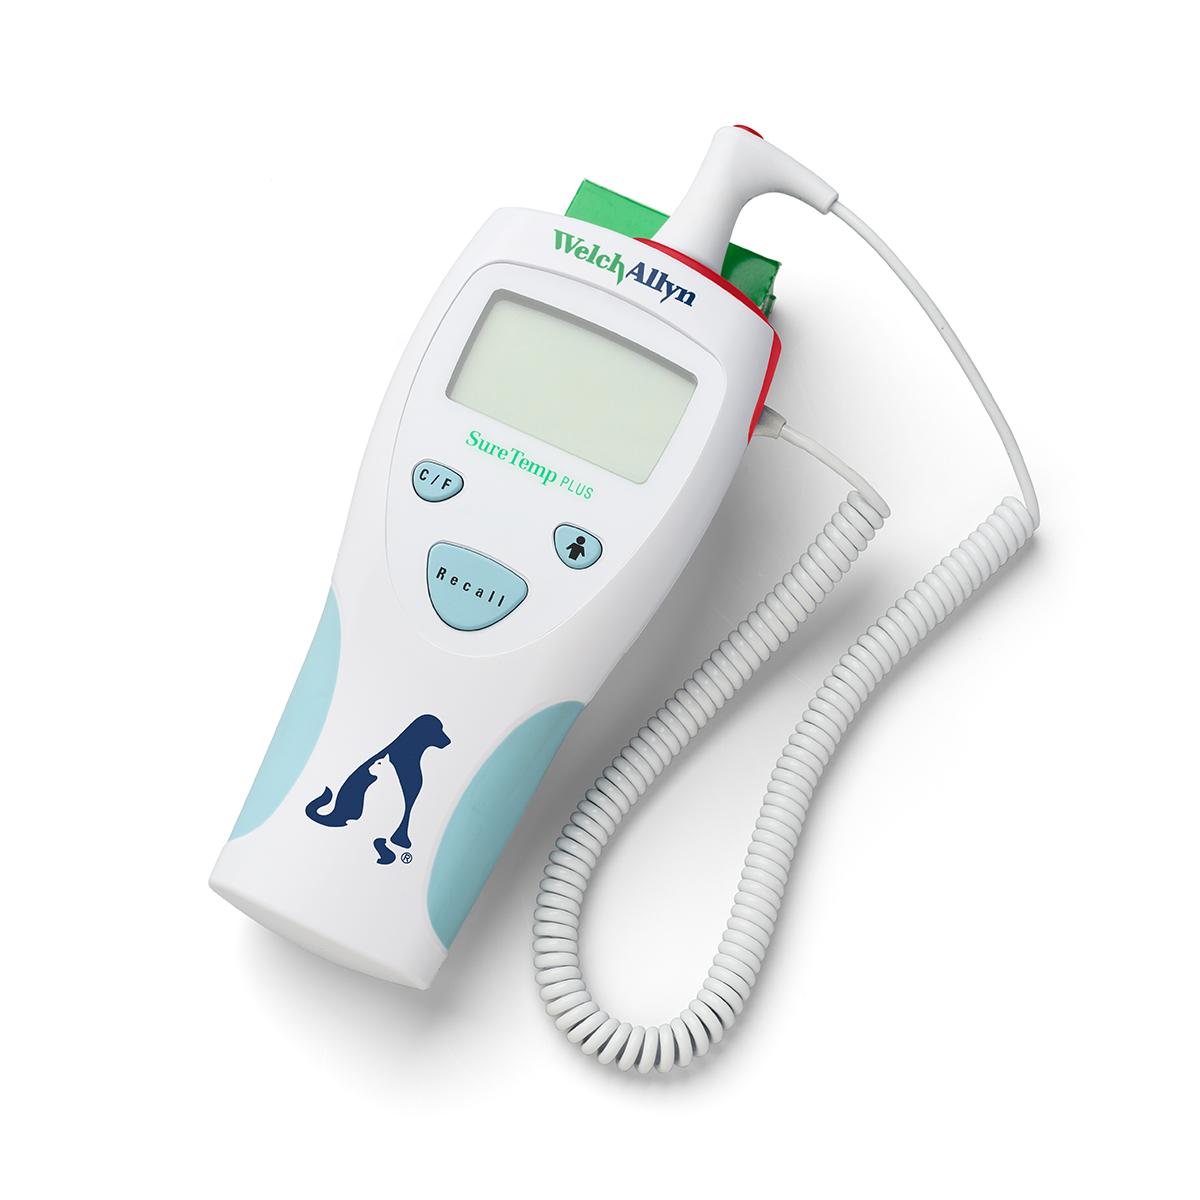 Welch Allyn SureTemp Plus 690 elektronisches Thermometer für die Veterinärmedizin